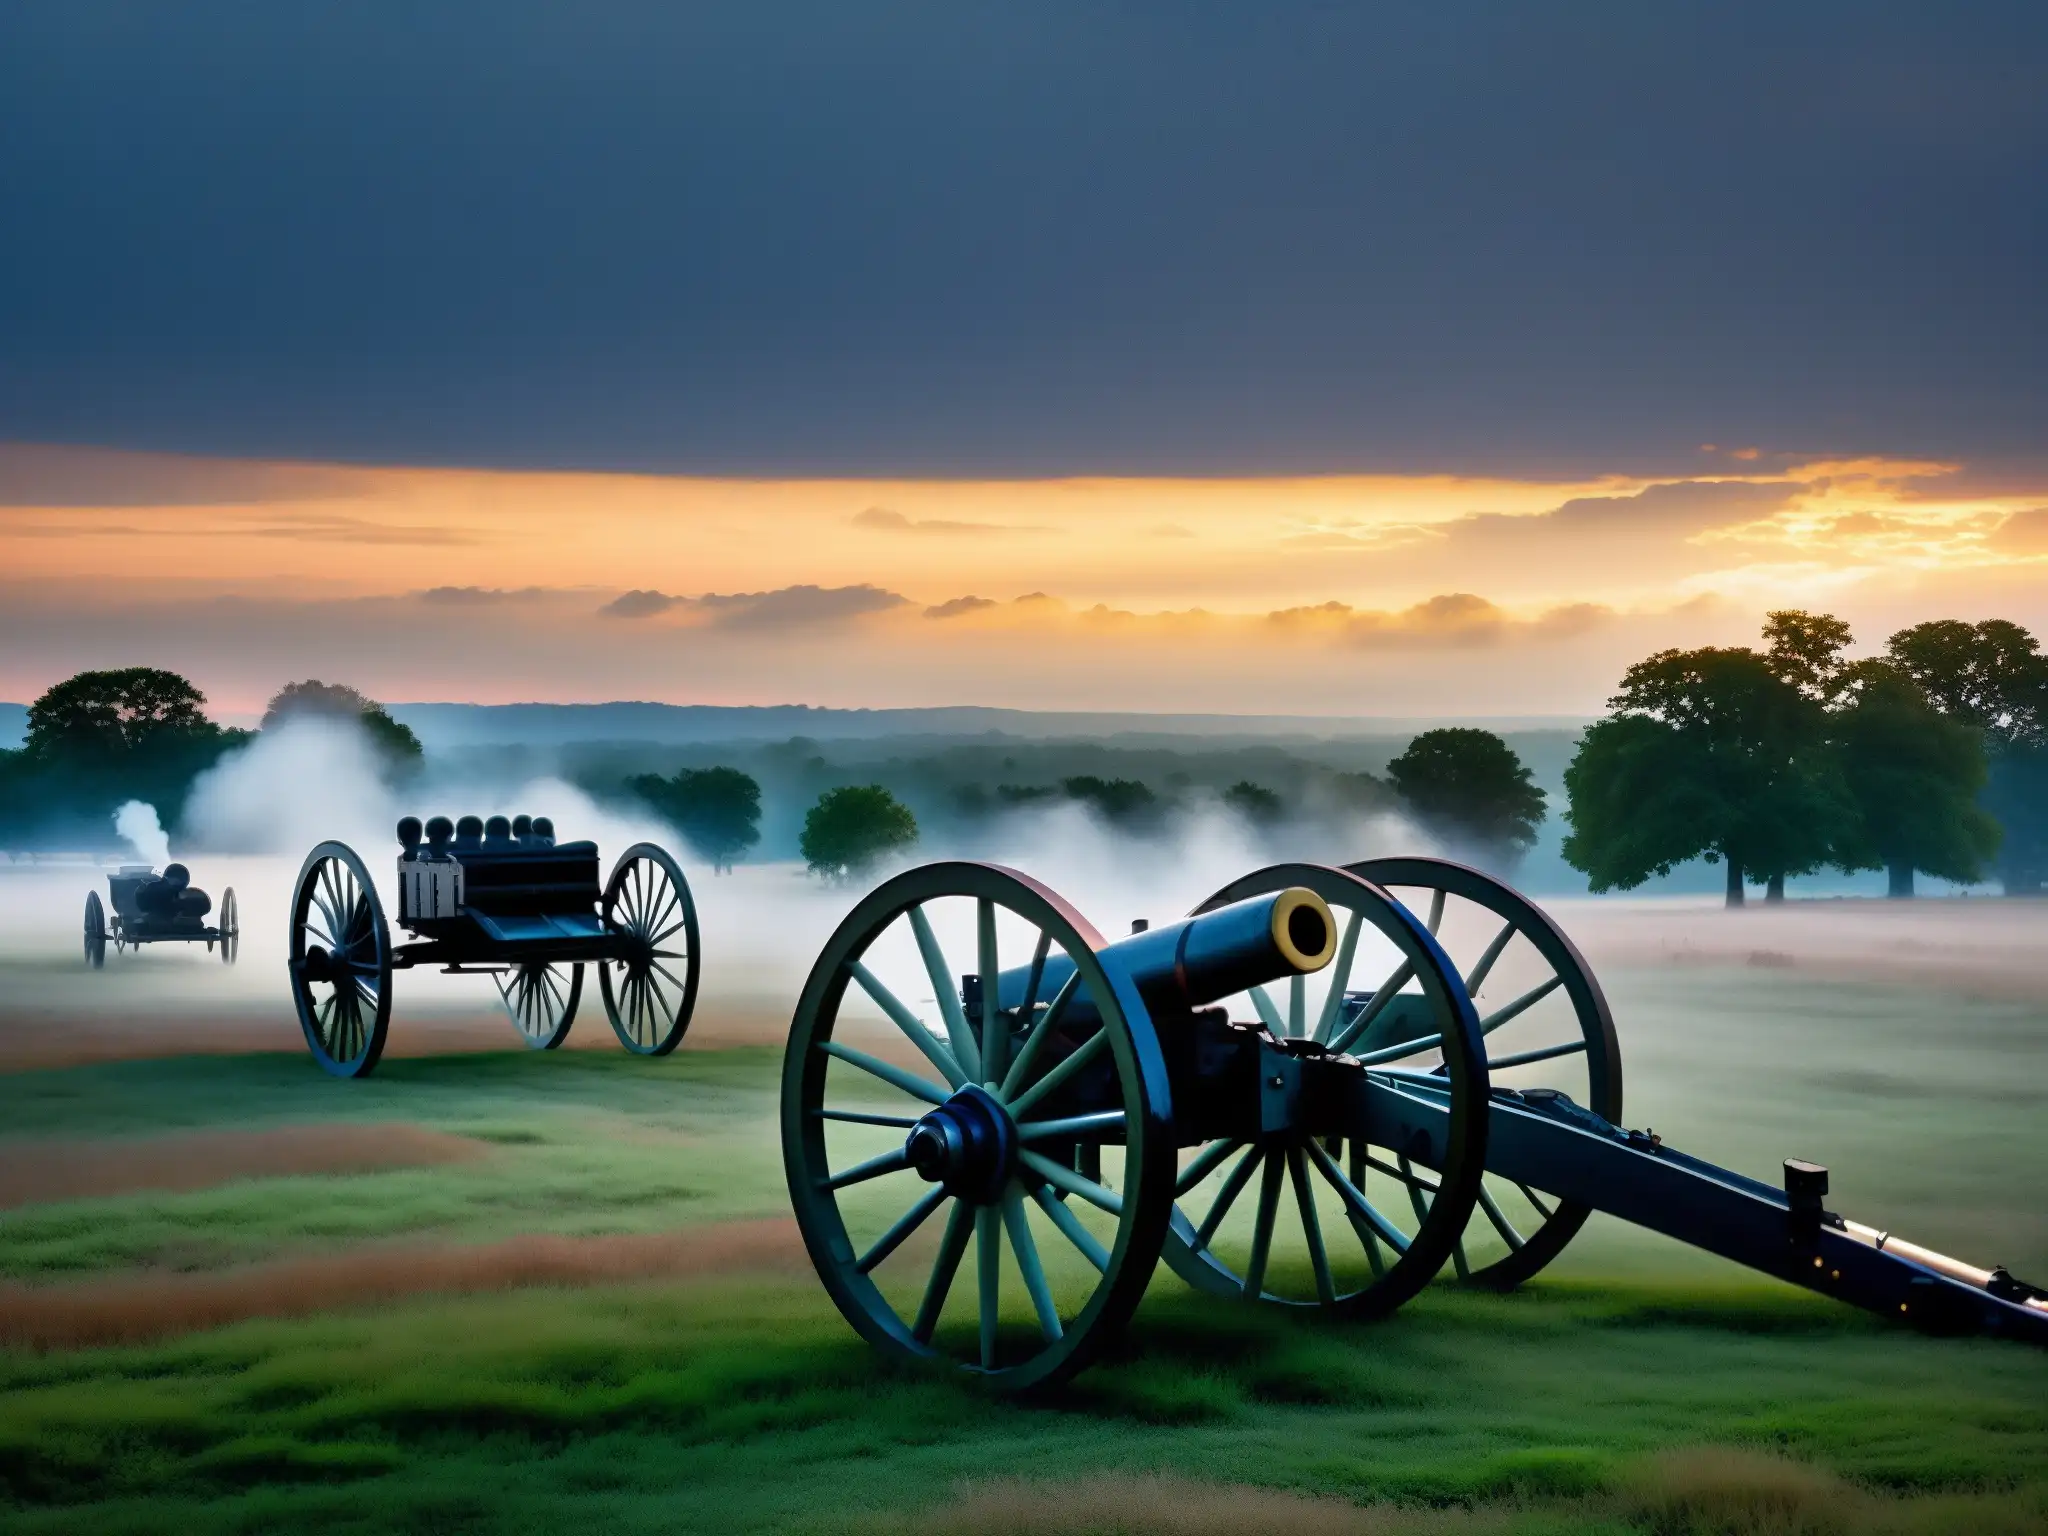 Campo de batalla histórico de Gettysburg al anochecer, con neblina sutil